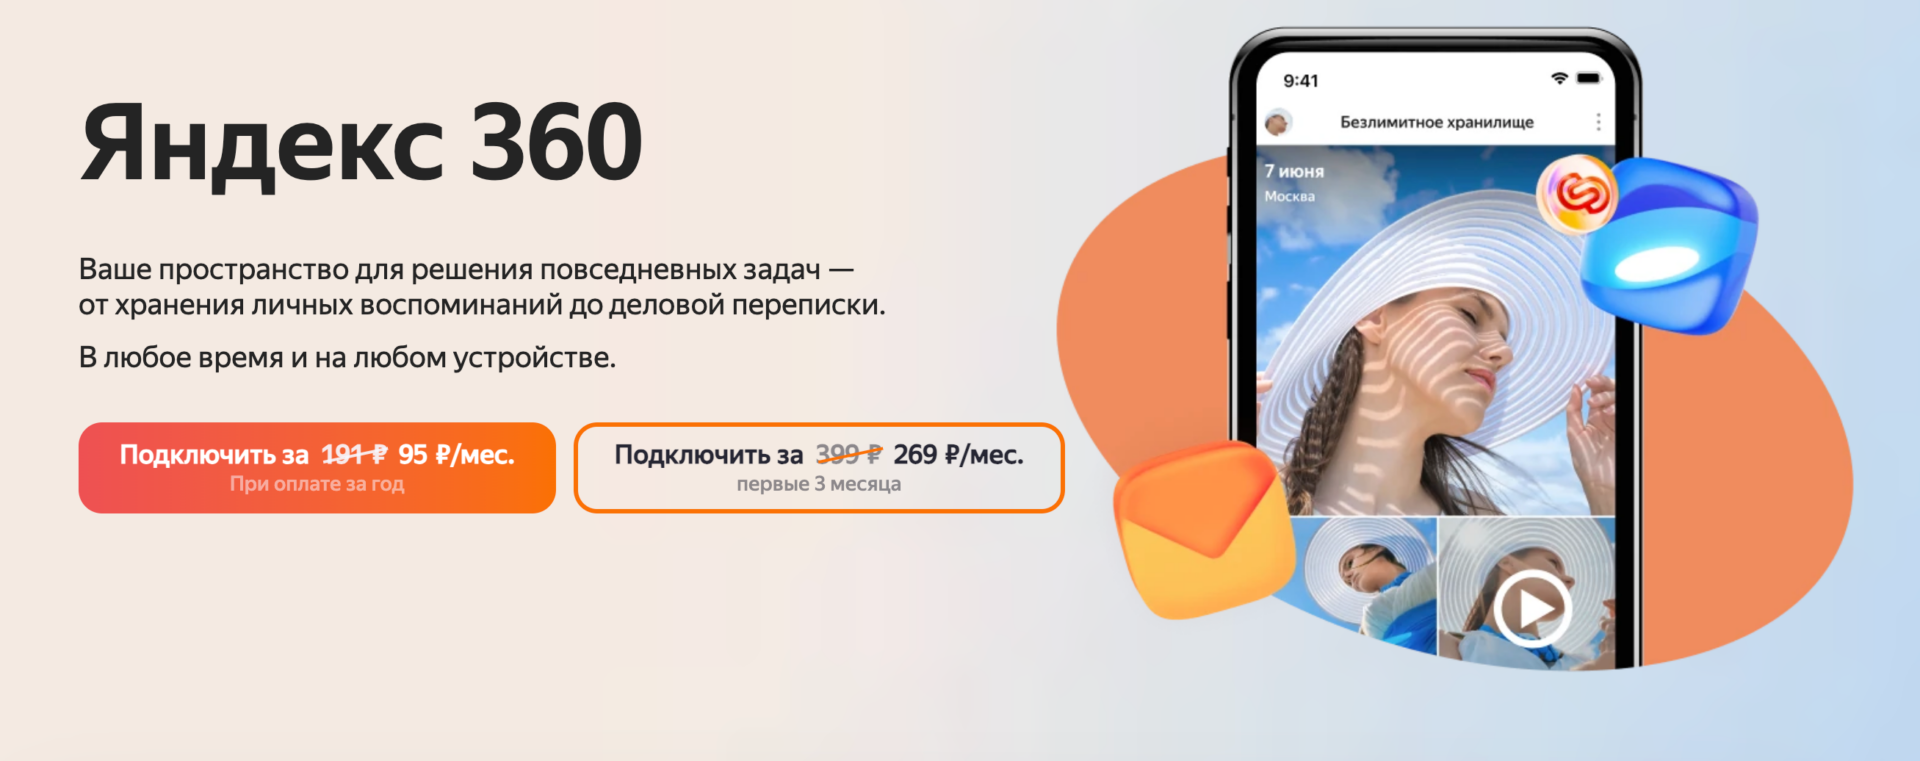 Яндекс 360